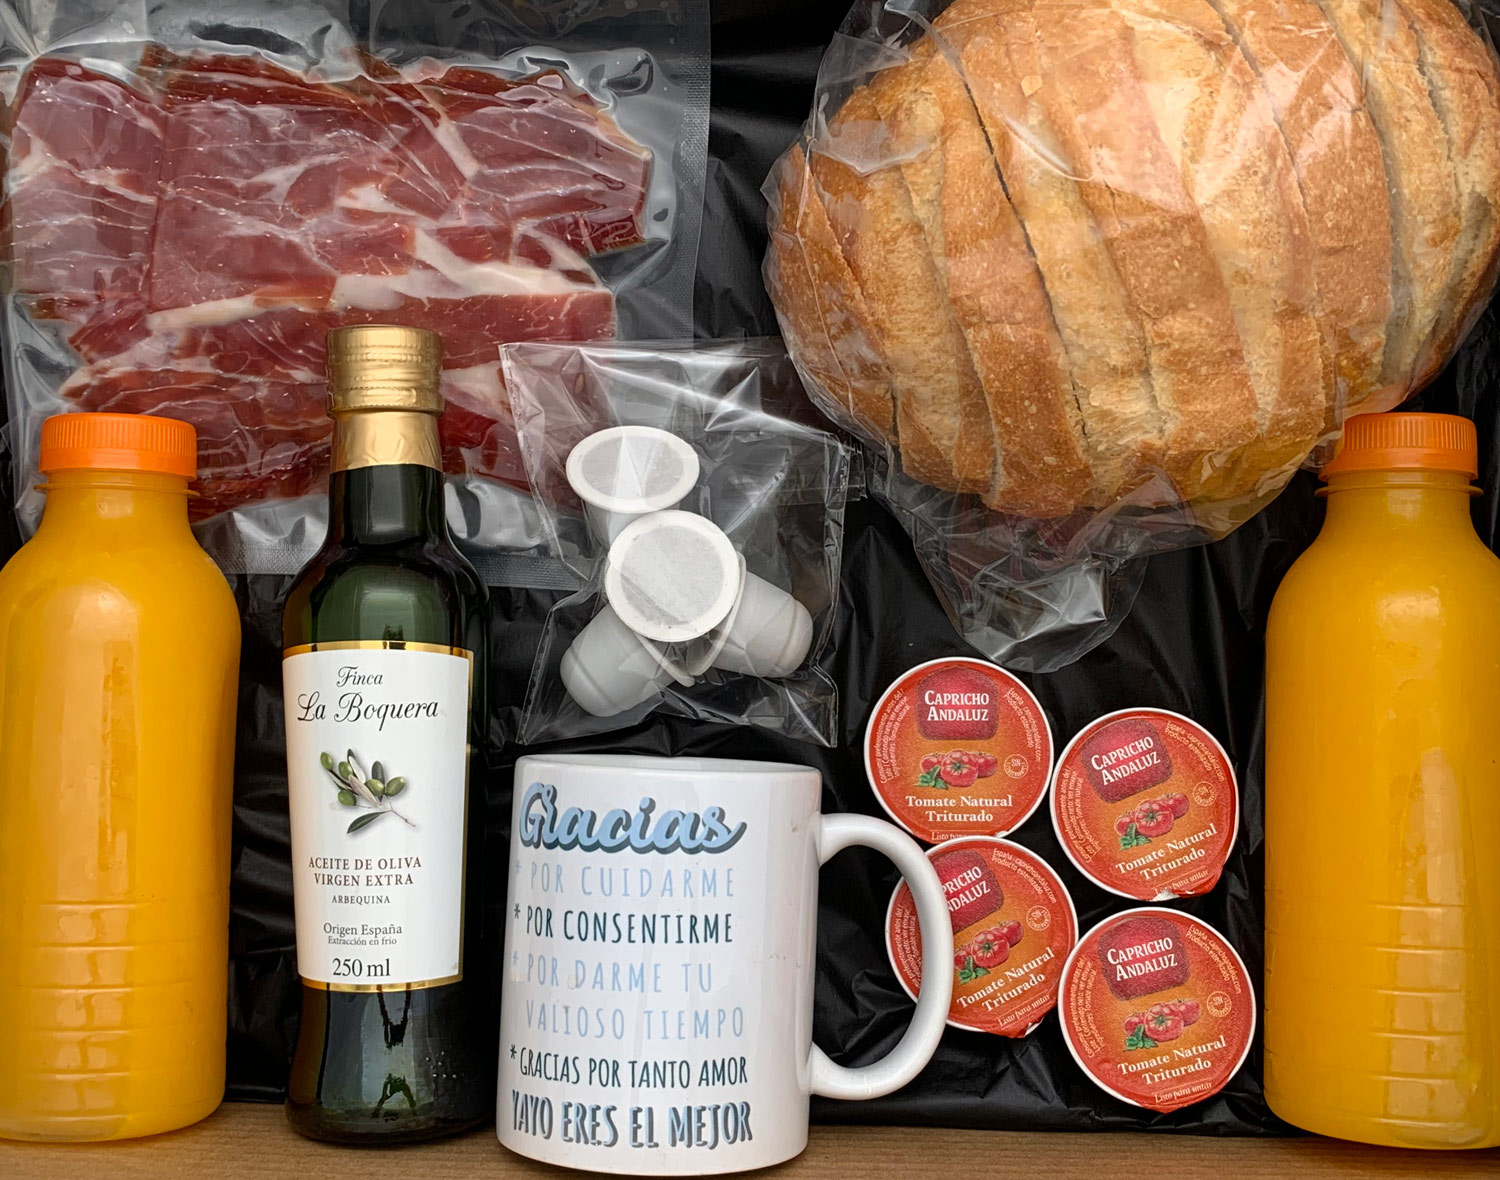 Foto con los productos que contiene la caja de desayuno salado dentro de la caja